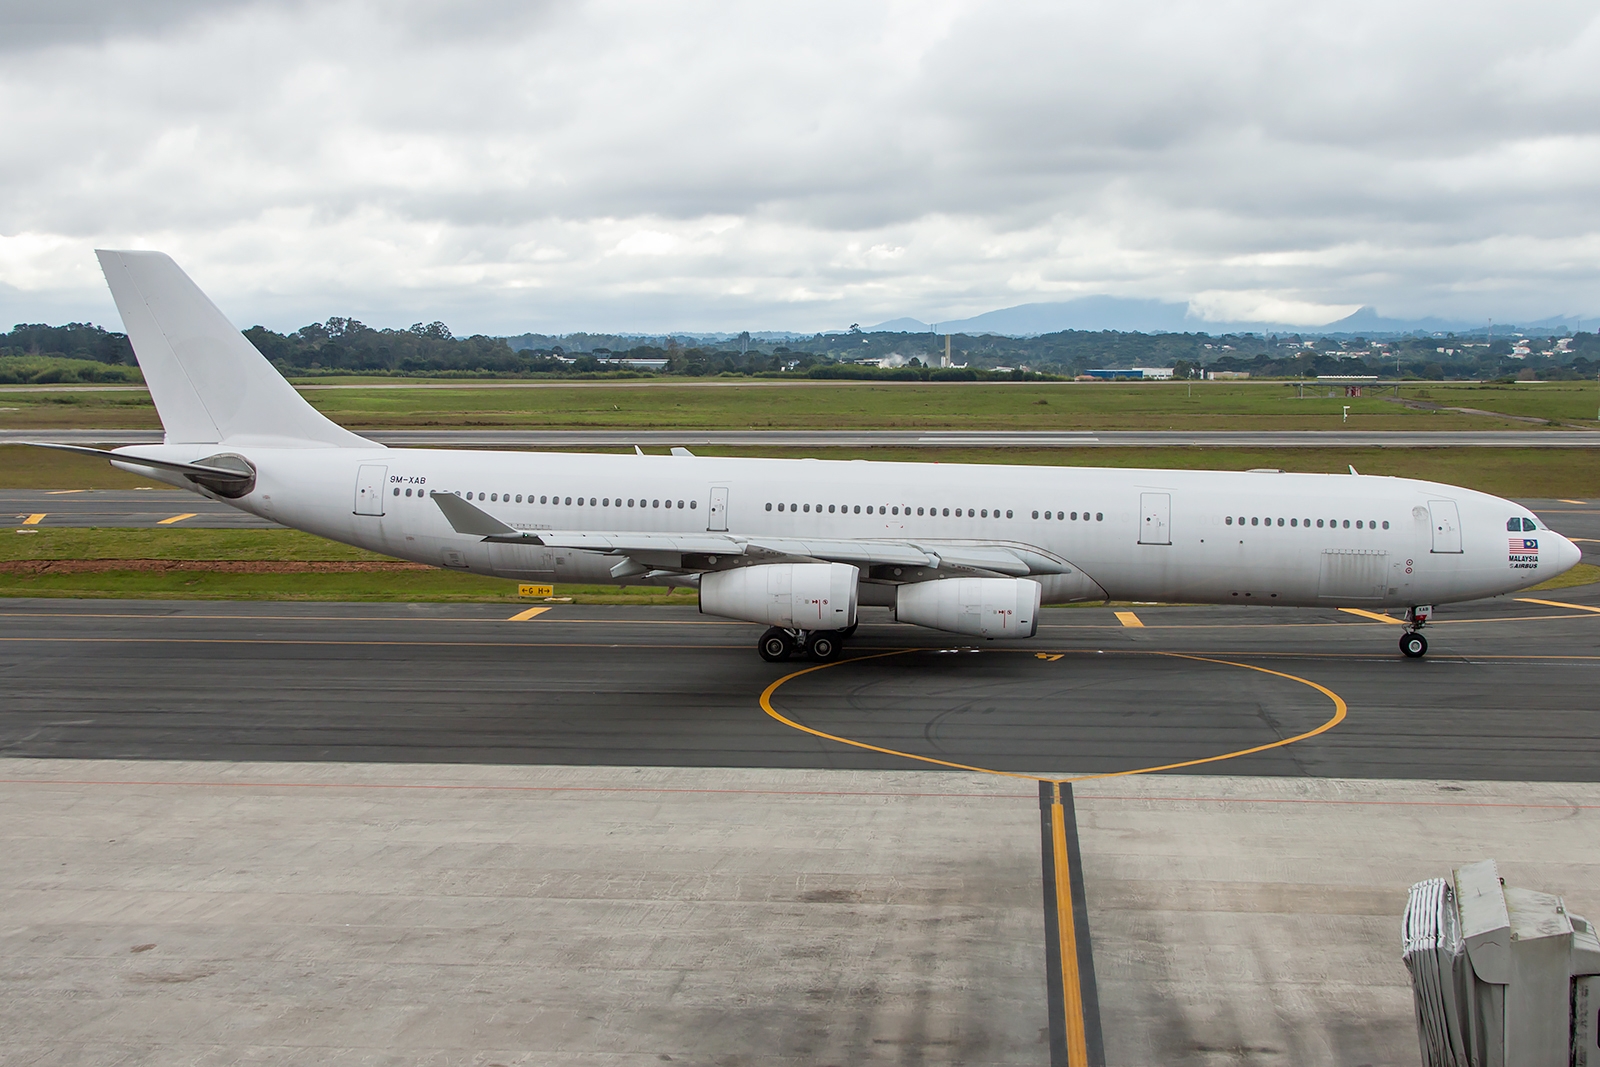 9M-XAB - Airbus A340-300